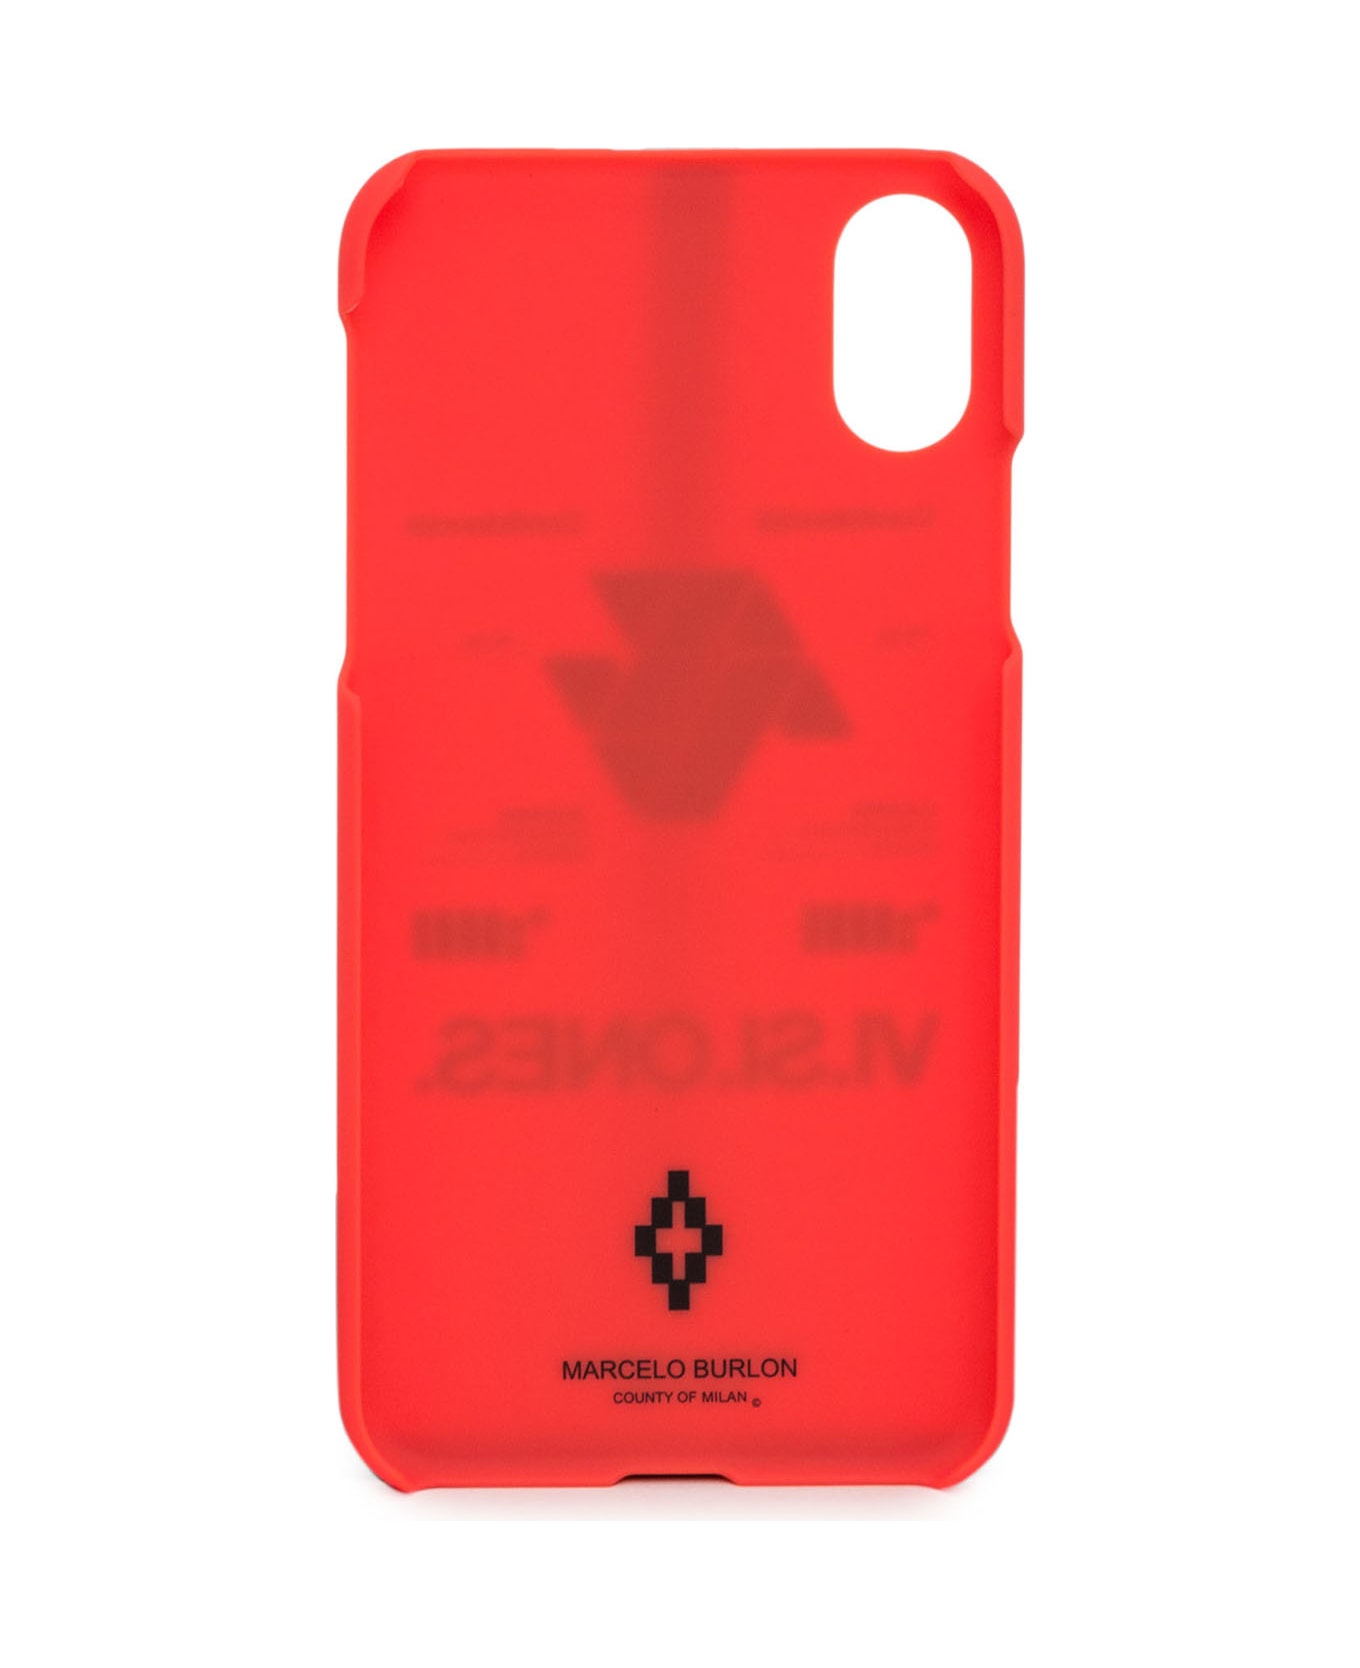 Marcelo Burlon Iphone X Case - NERO デジタルアクセサリー